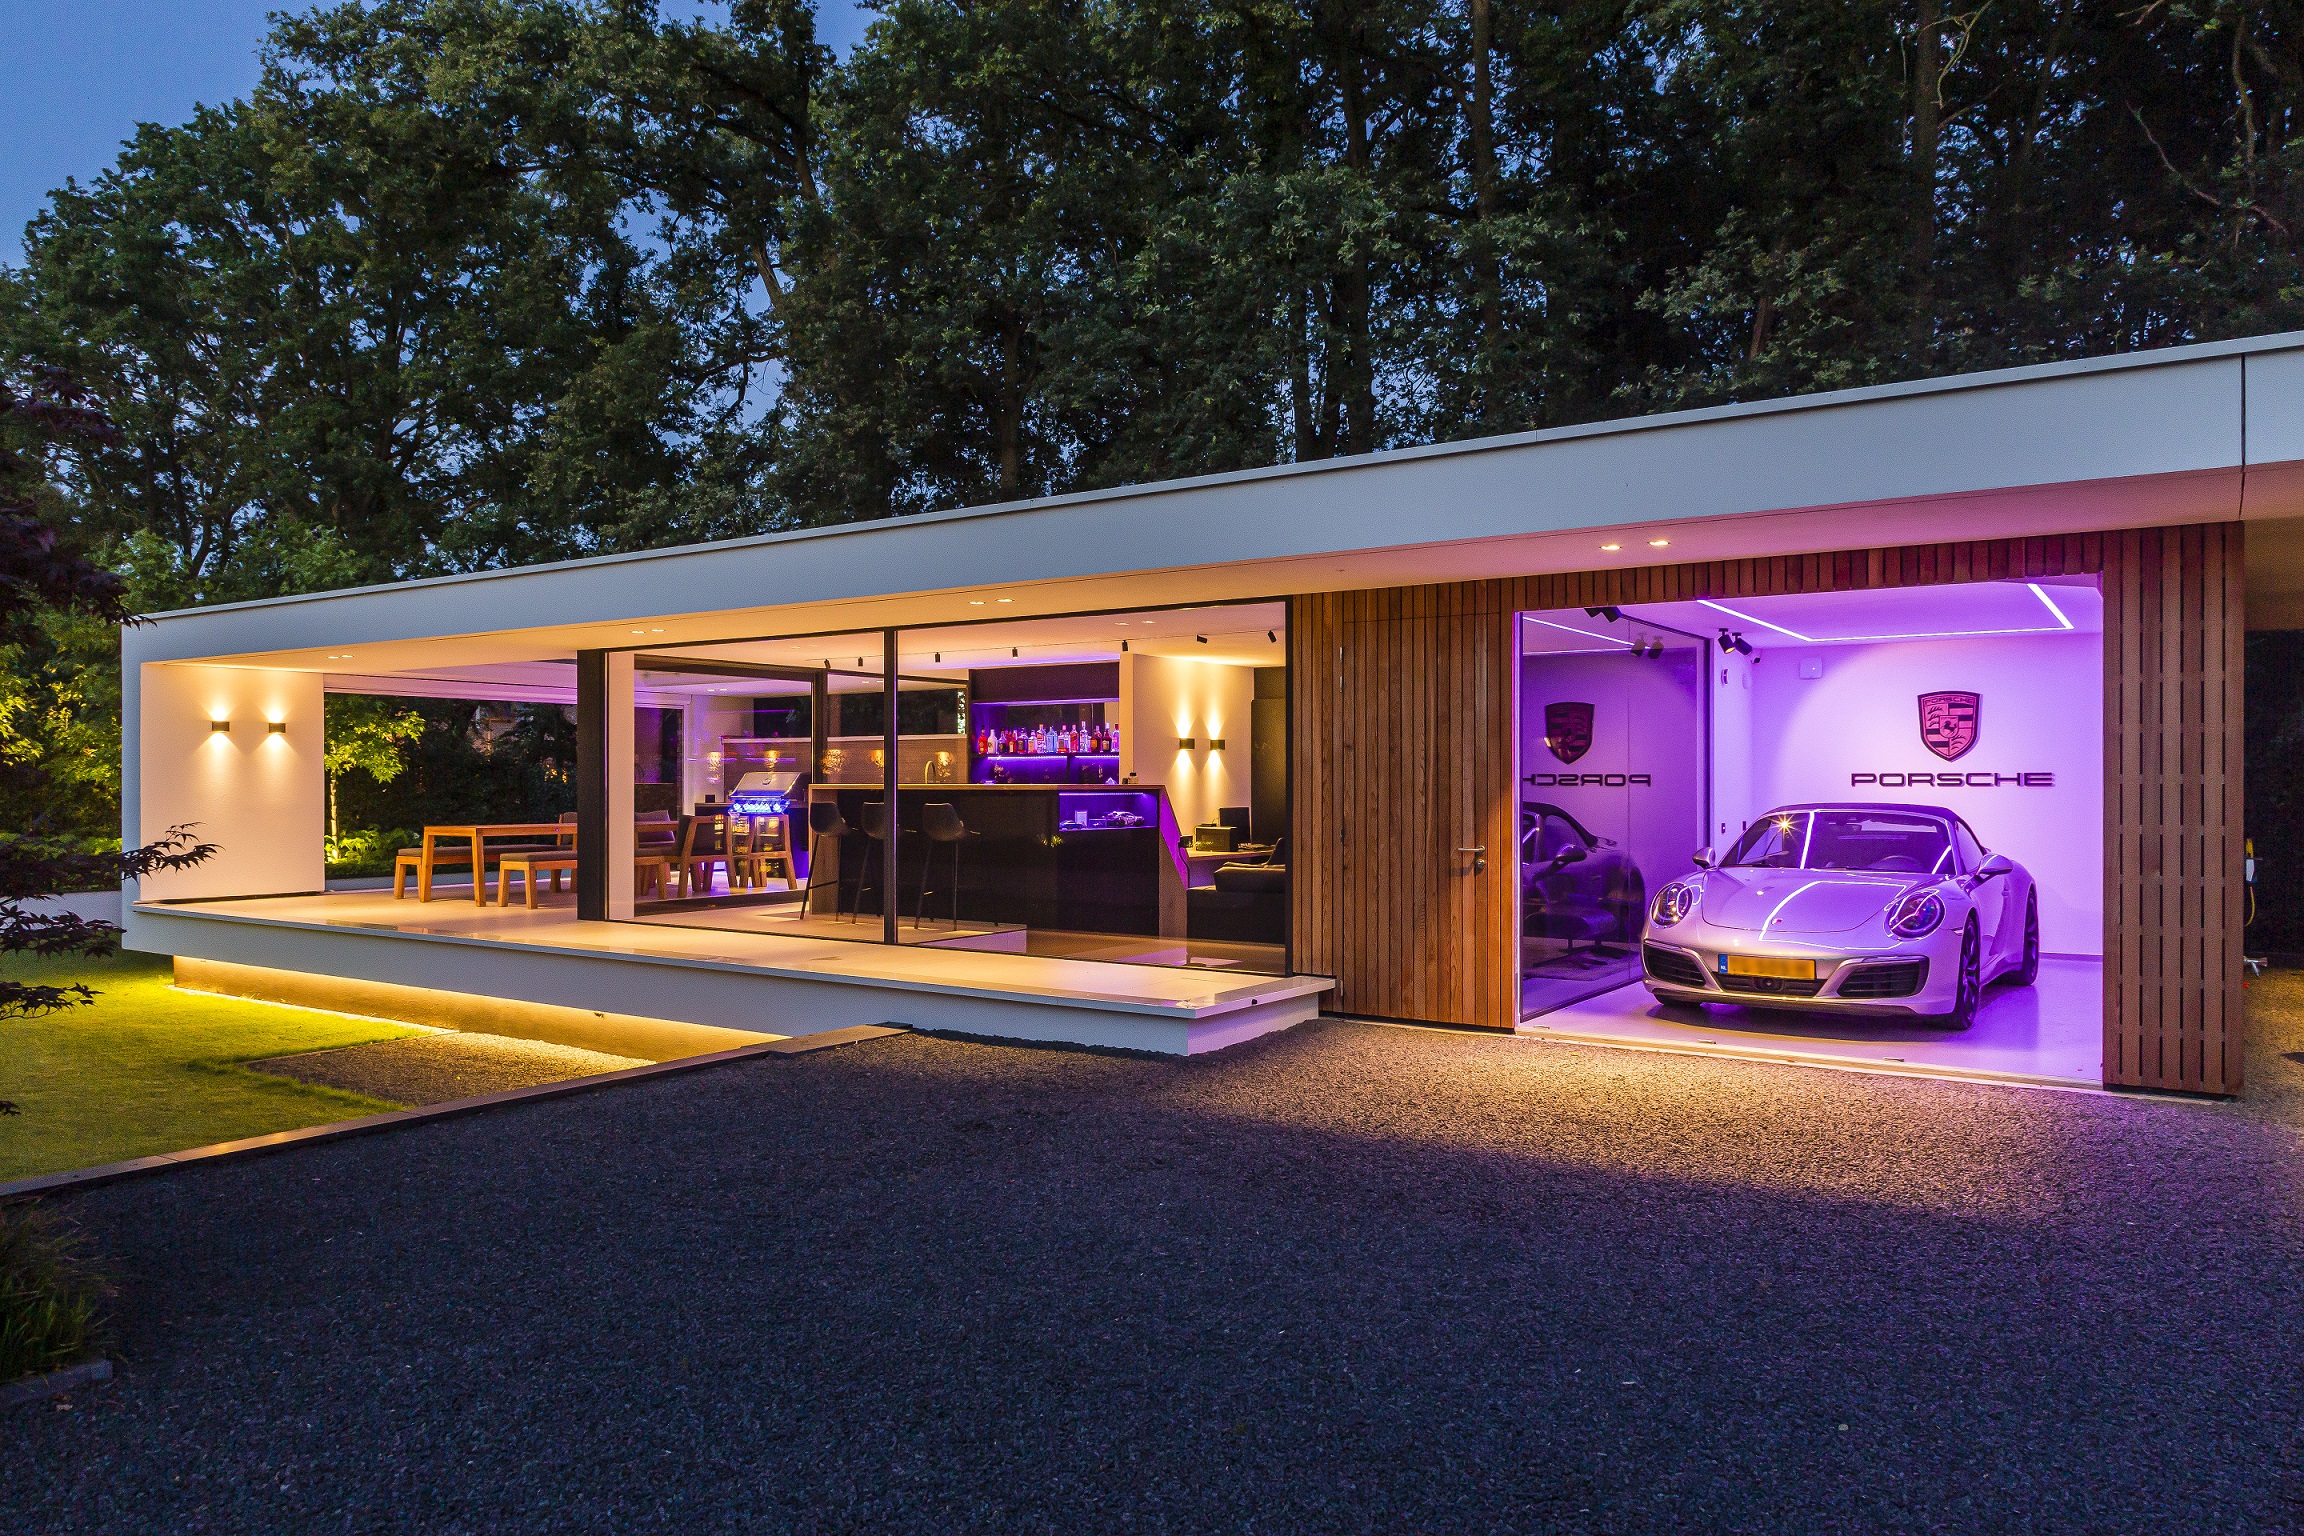 Foto: Villa bouwen   Luxe buitenverblijf met bar en garage   Lichtenberg Exclusieve Villabouw  10 